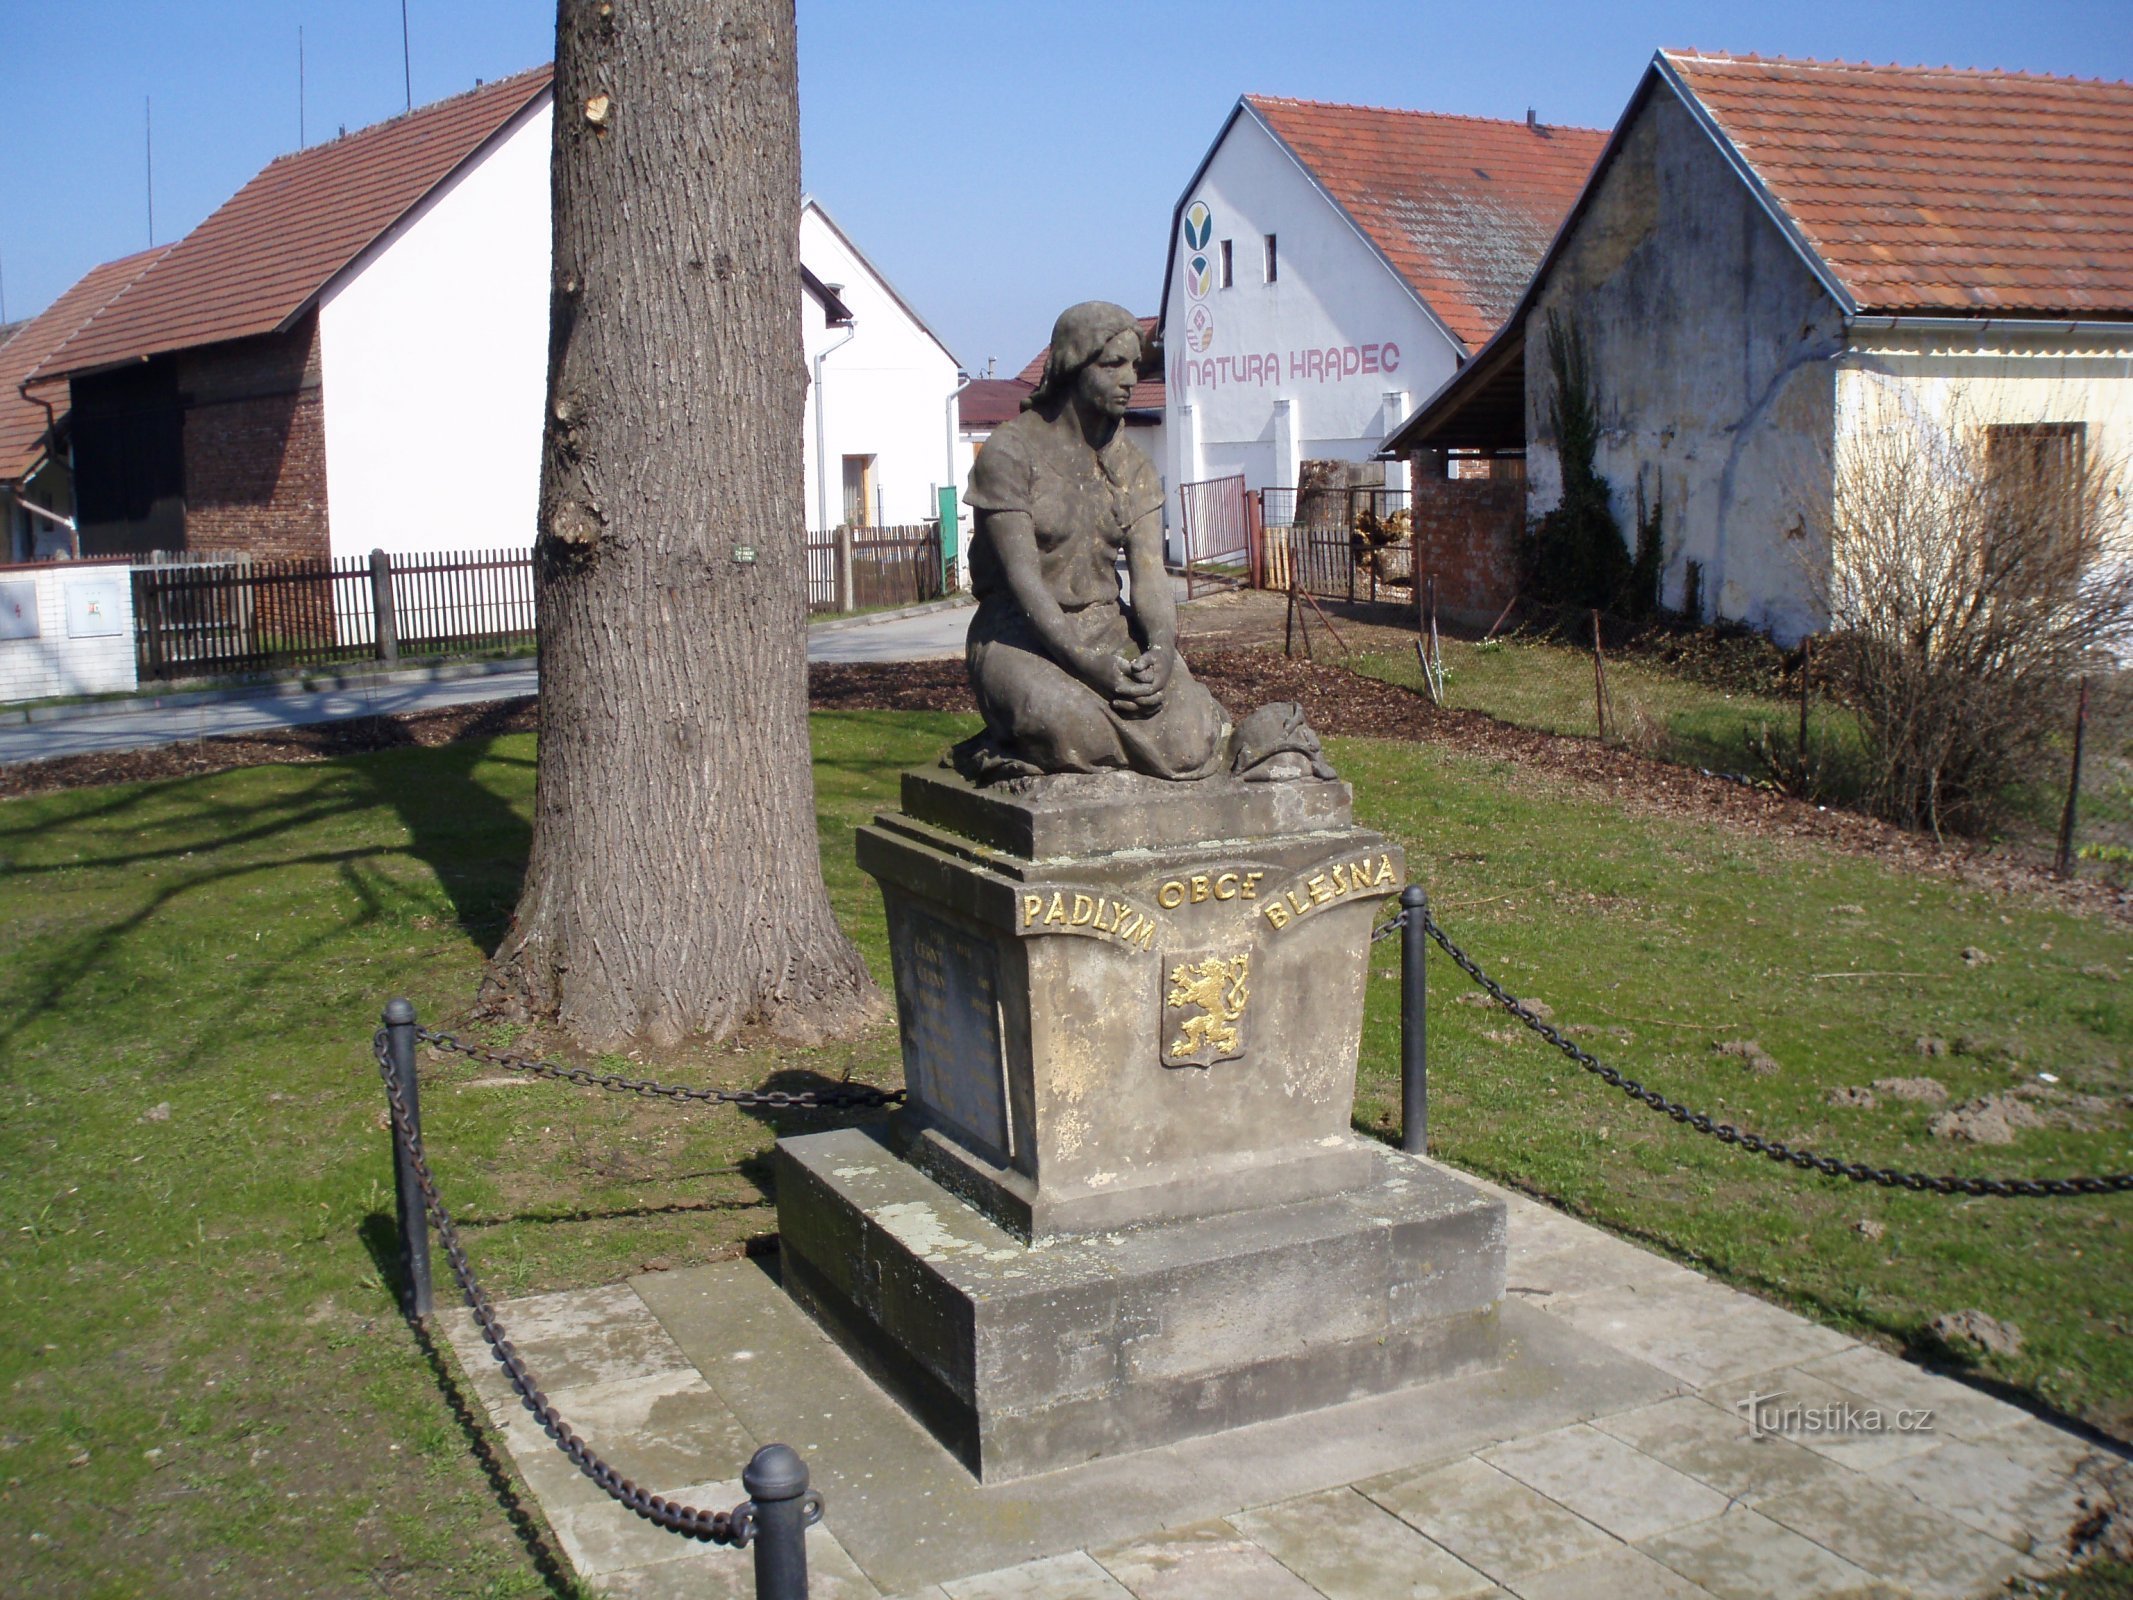 Denkmal für die Gefallenen des Ersten Weltkriegs (Blešno)